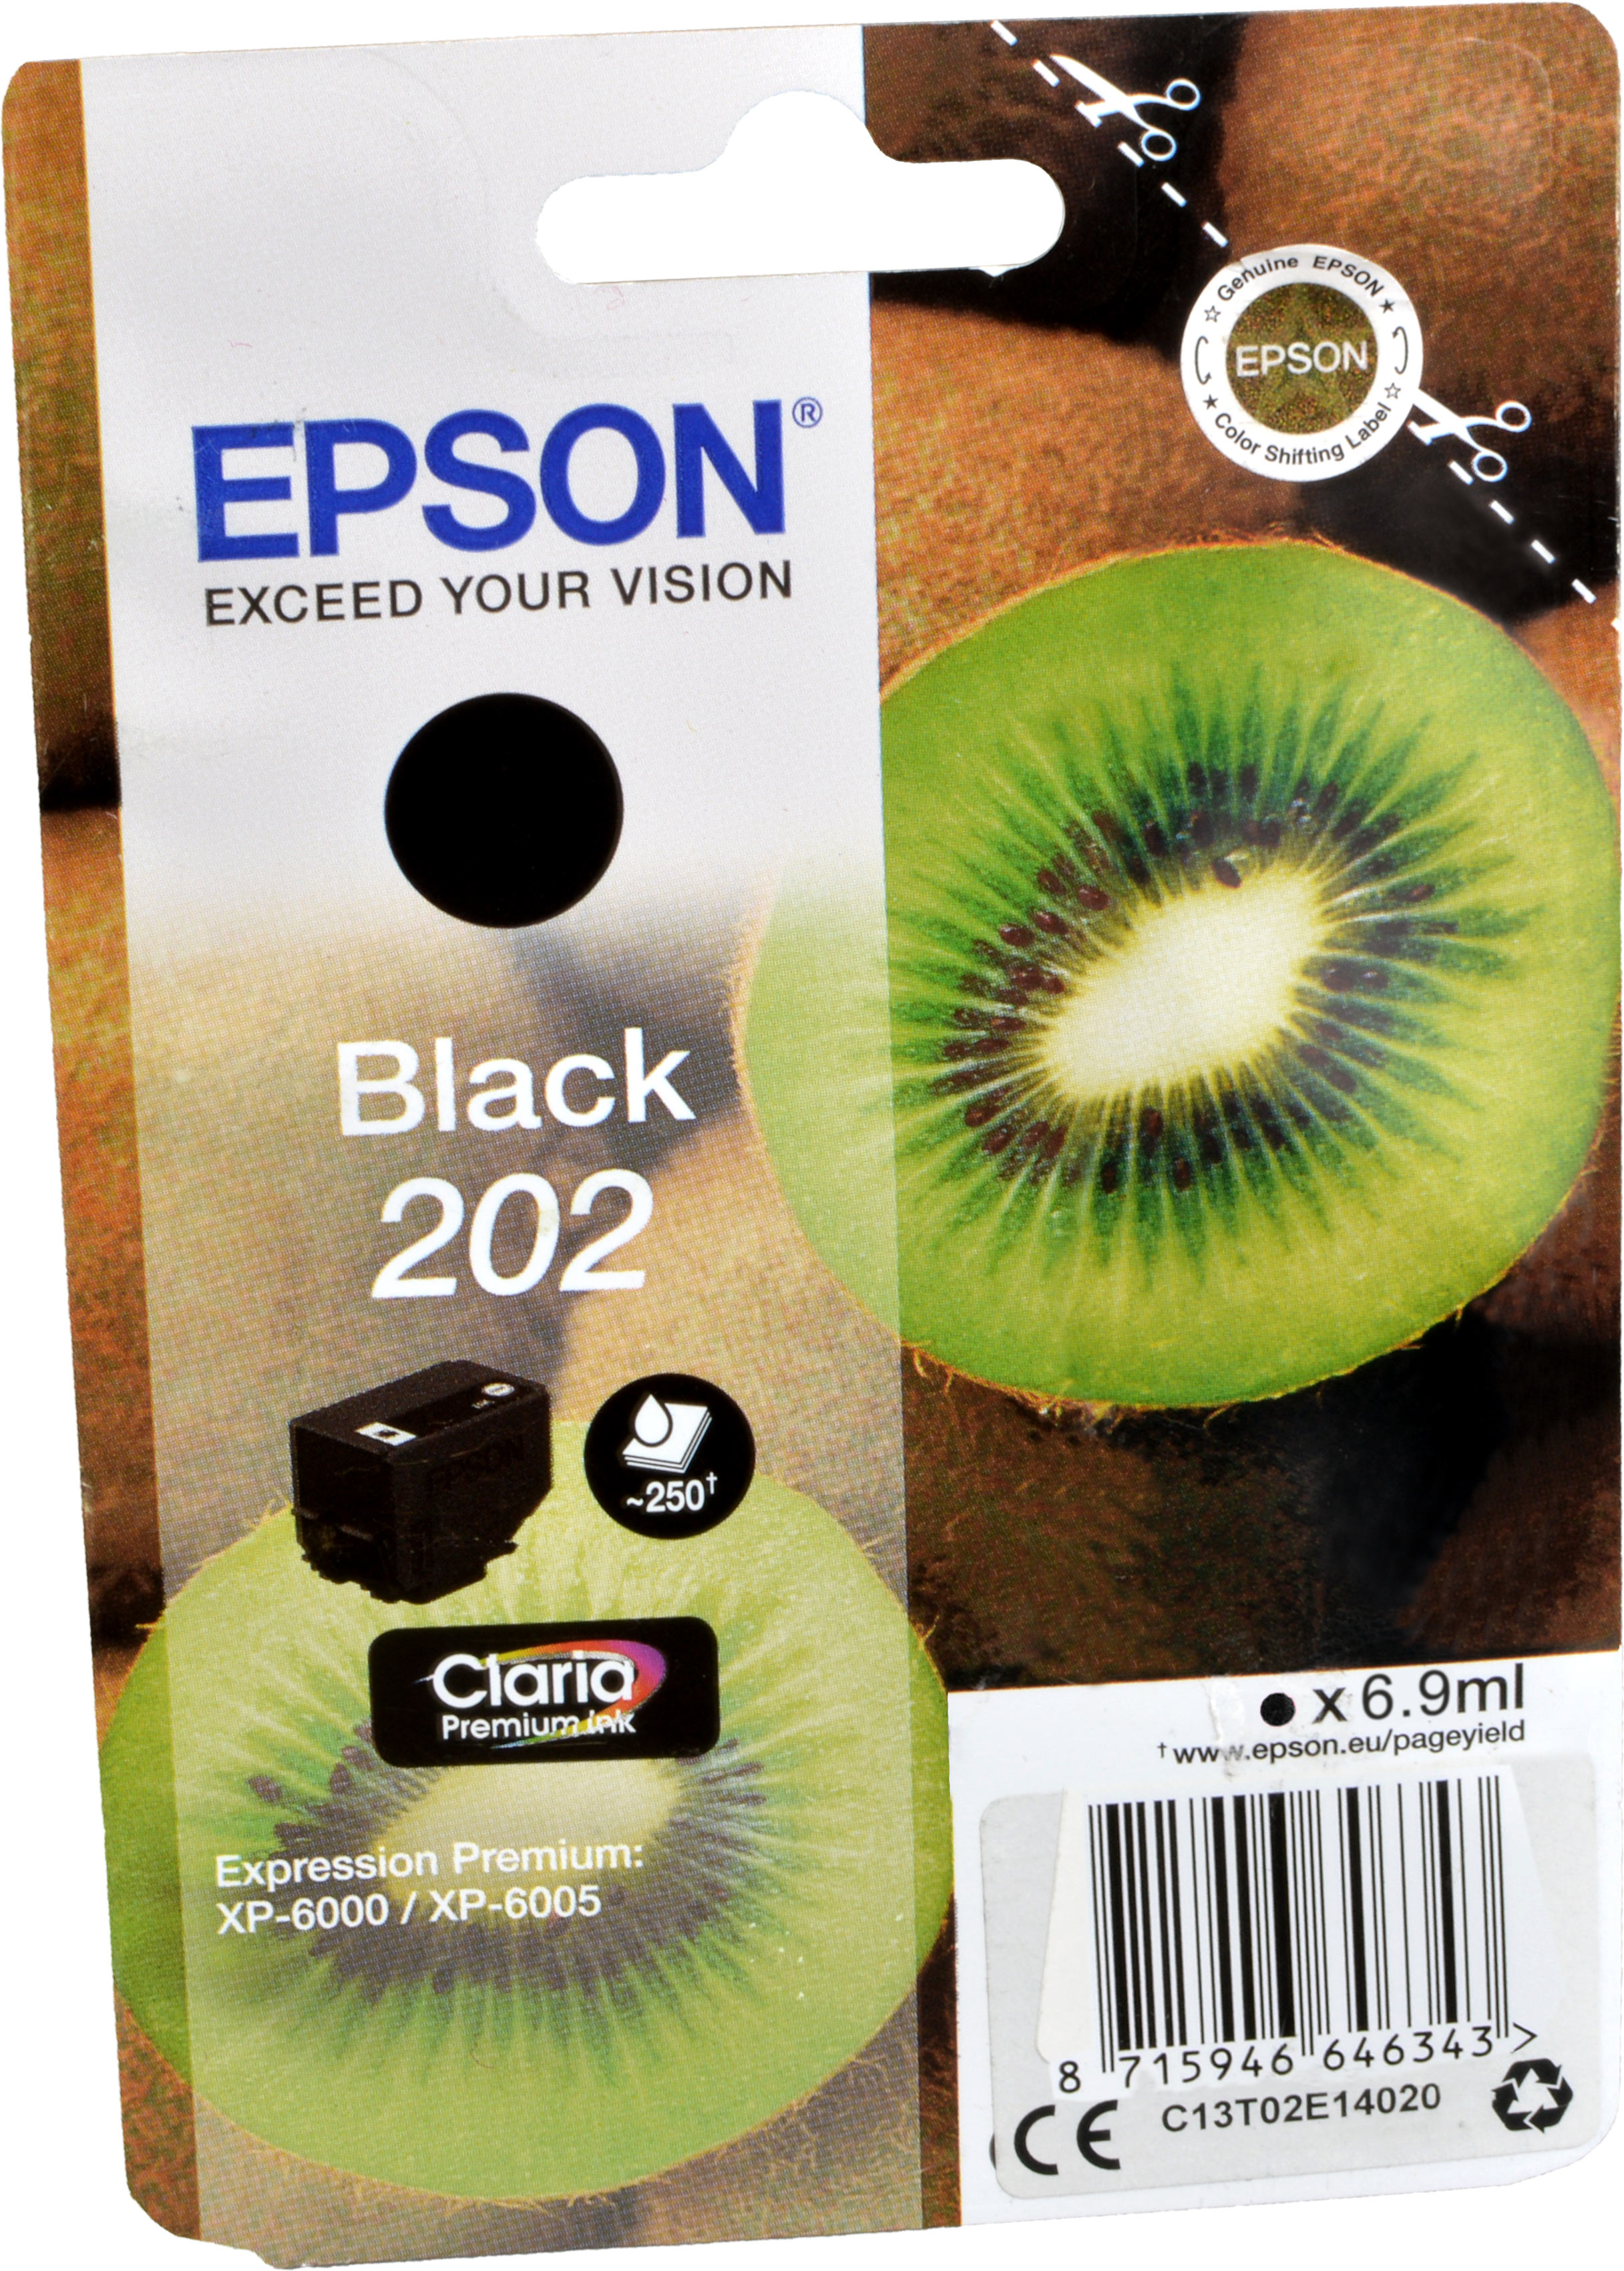 Epson Tinte C13T02E14010  Black  202  schwarz